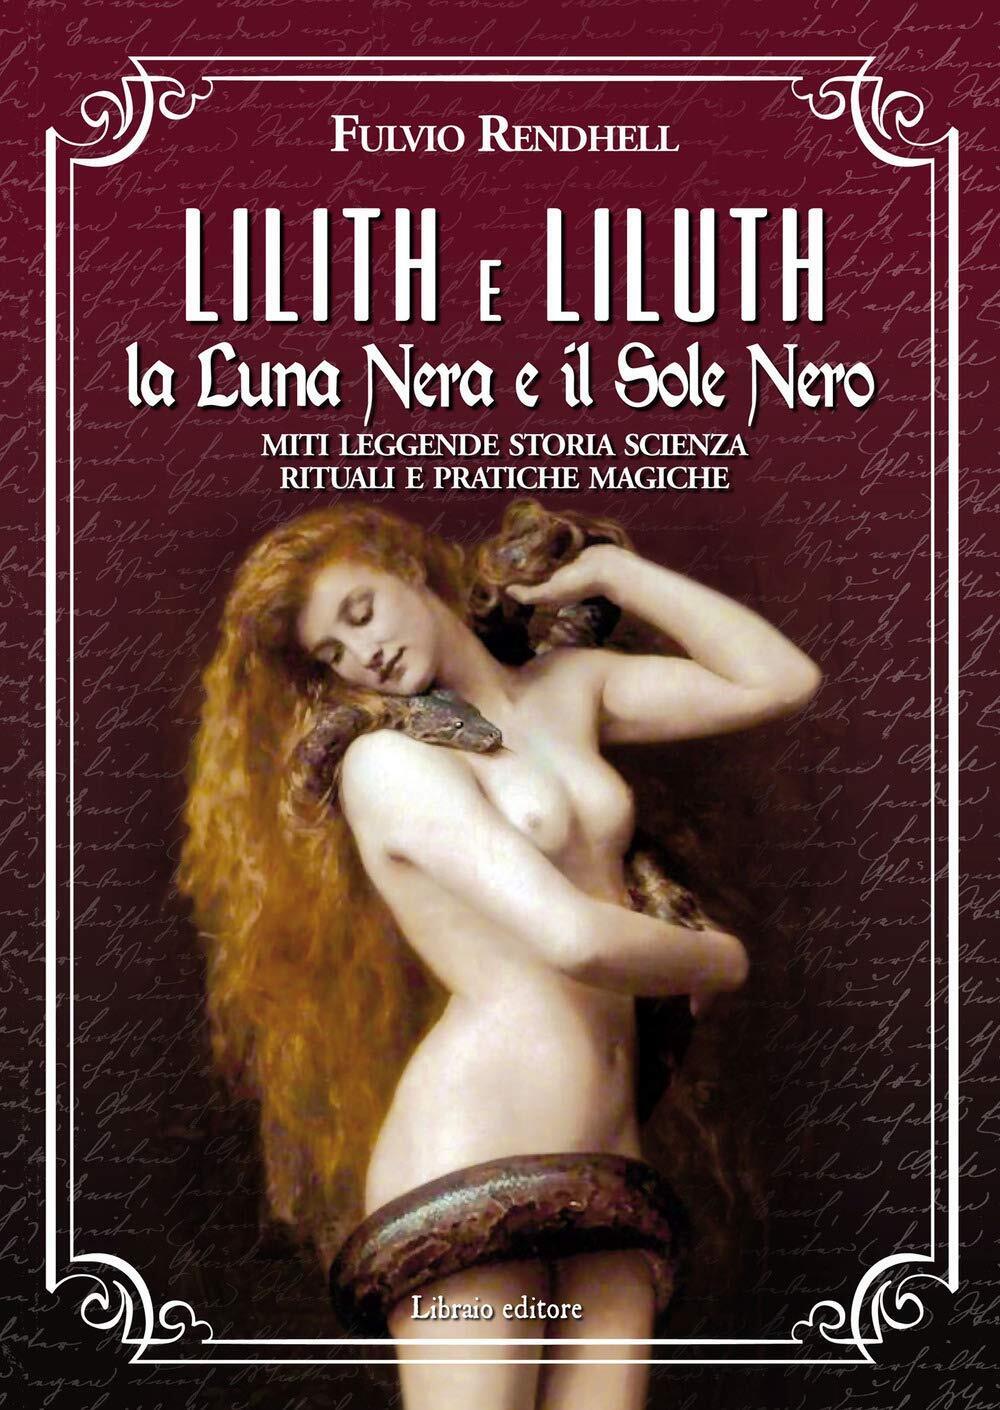 Lilith e Liluth. La Luna Nera e il Sole Nero - Fulvio Rendhell - Libraio, 2020